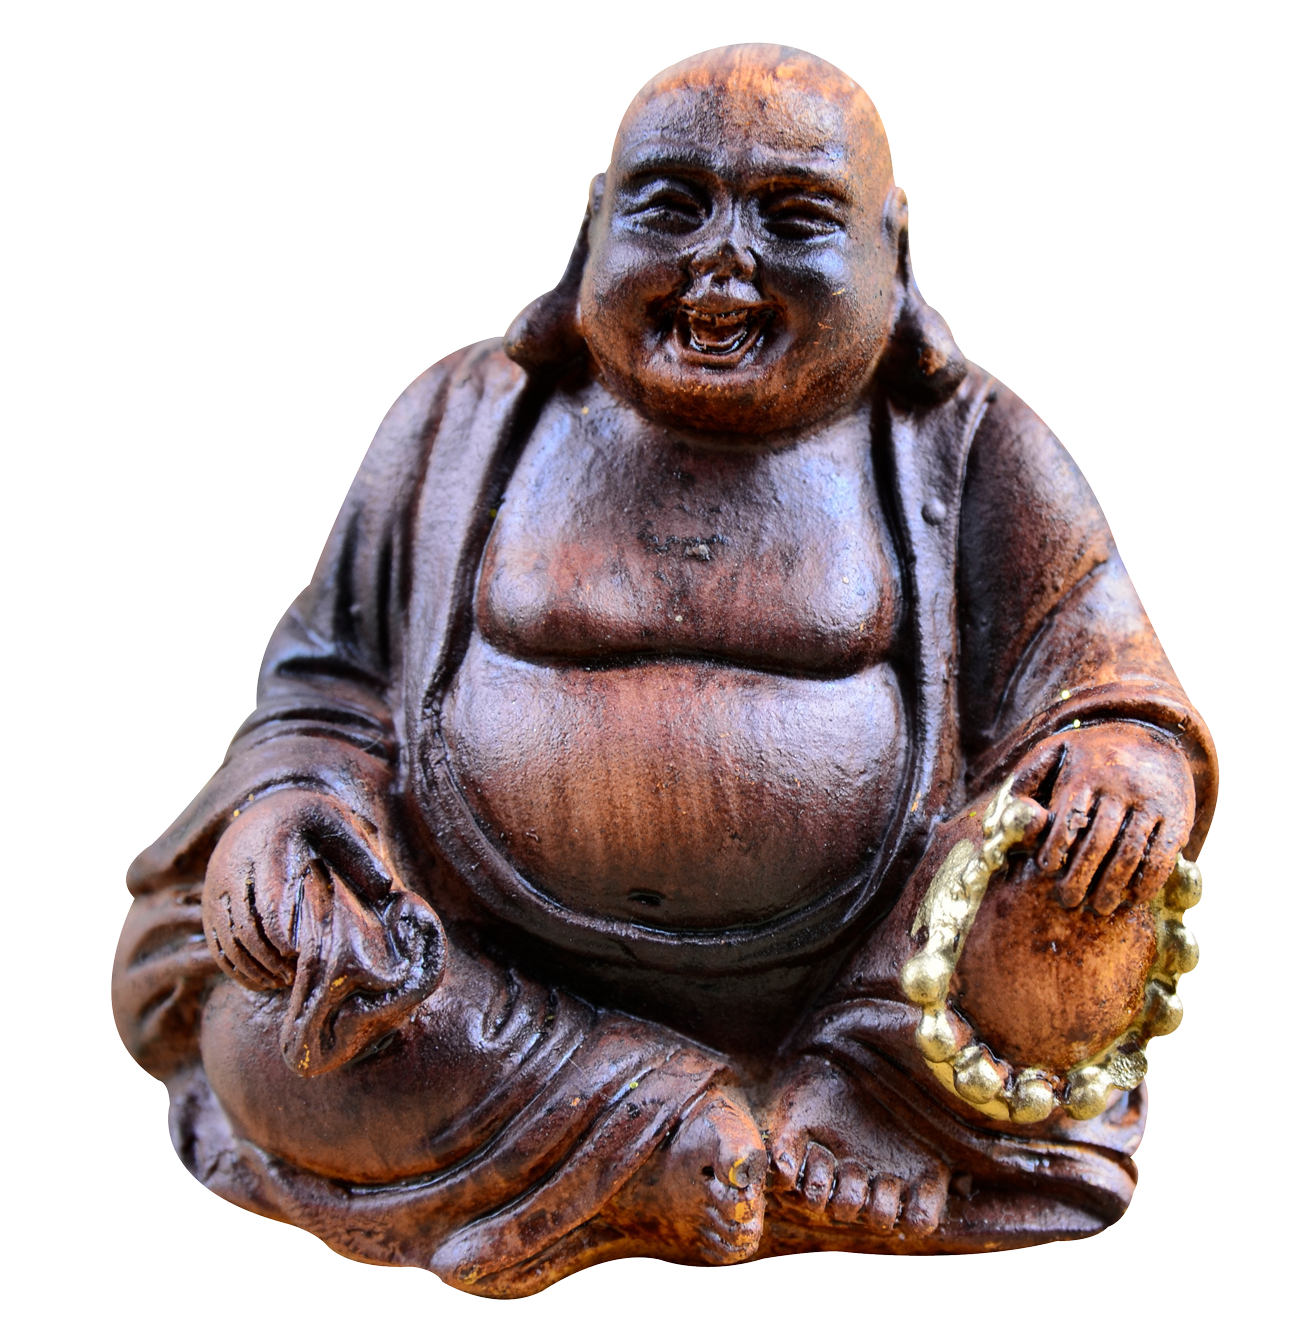 Laughing Buddha PNG Image.